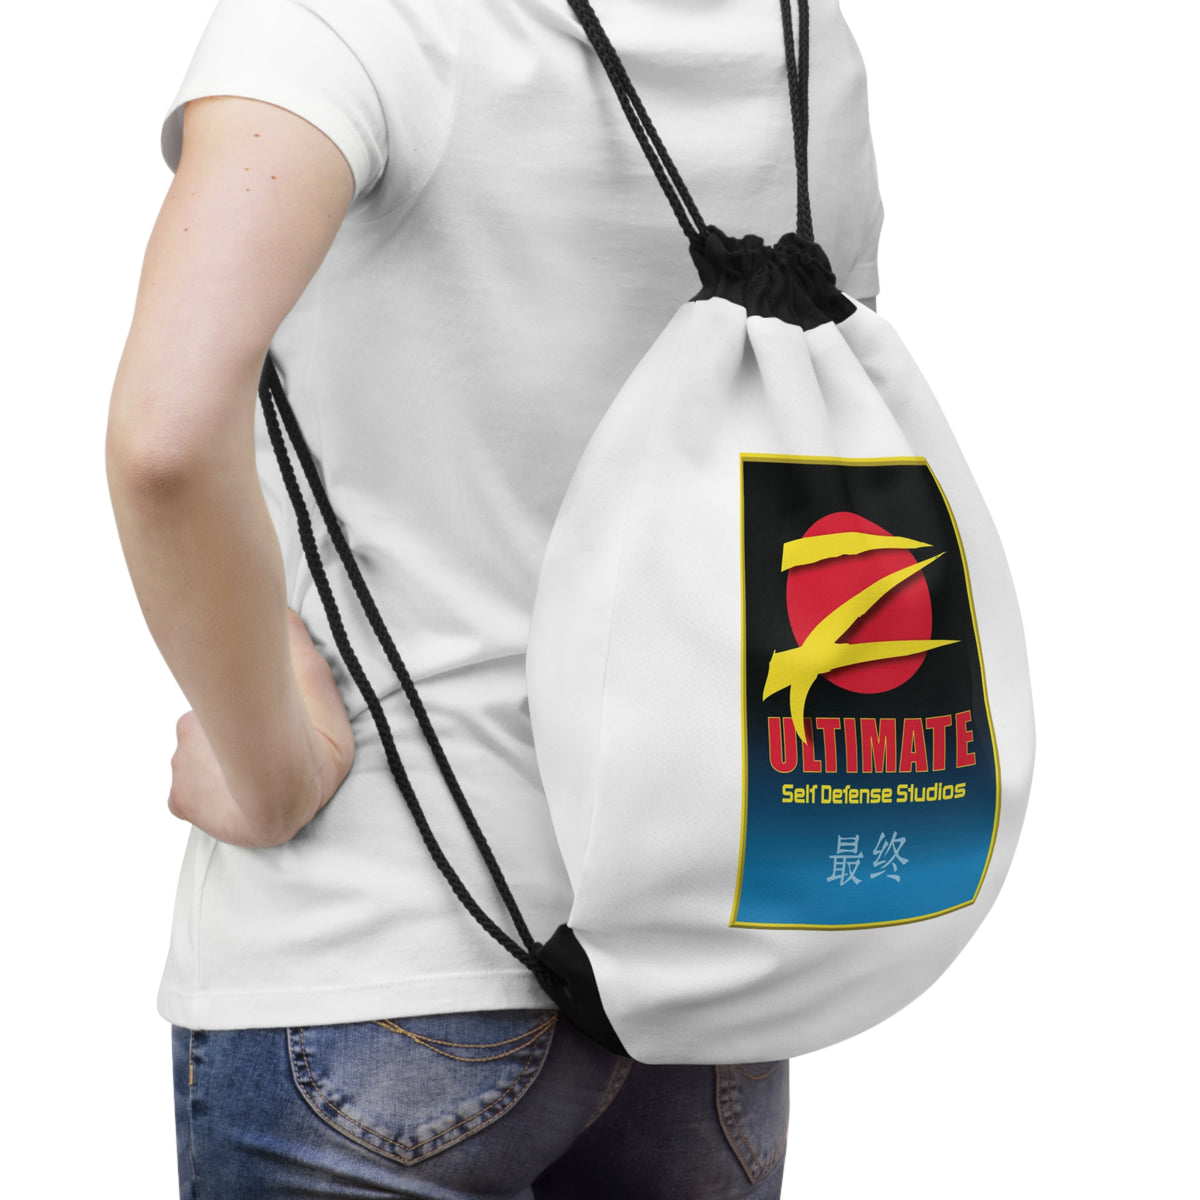 Z-Ultimate White Drawstring Bag